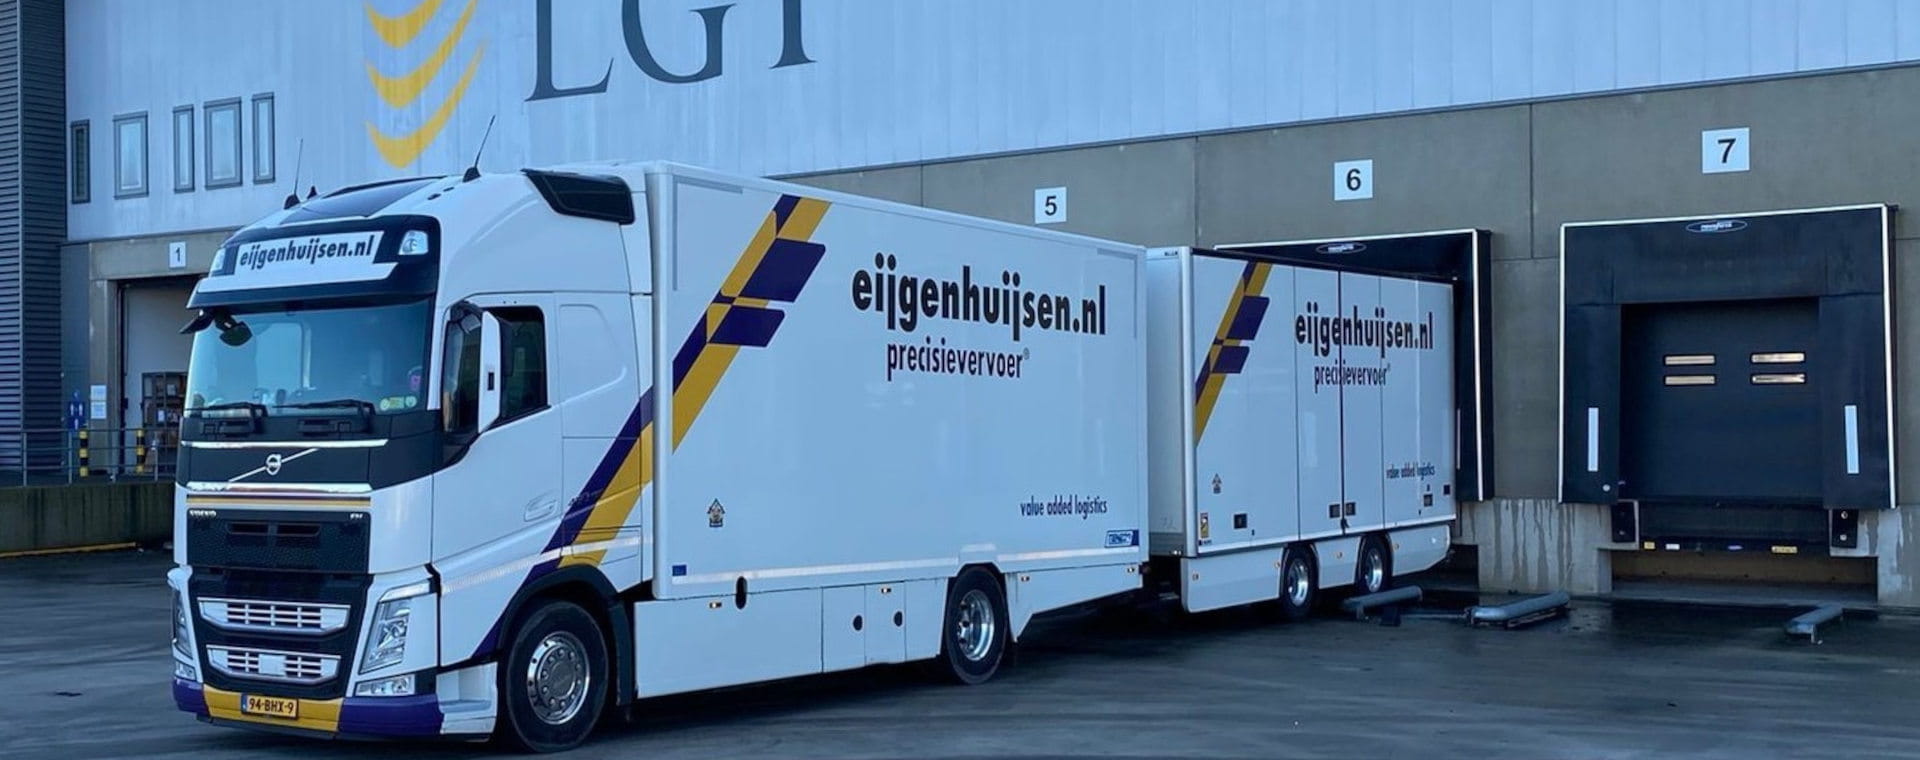 Elanders buys dutch company